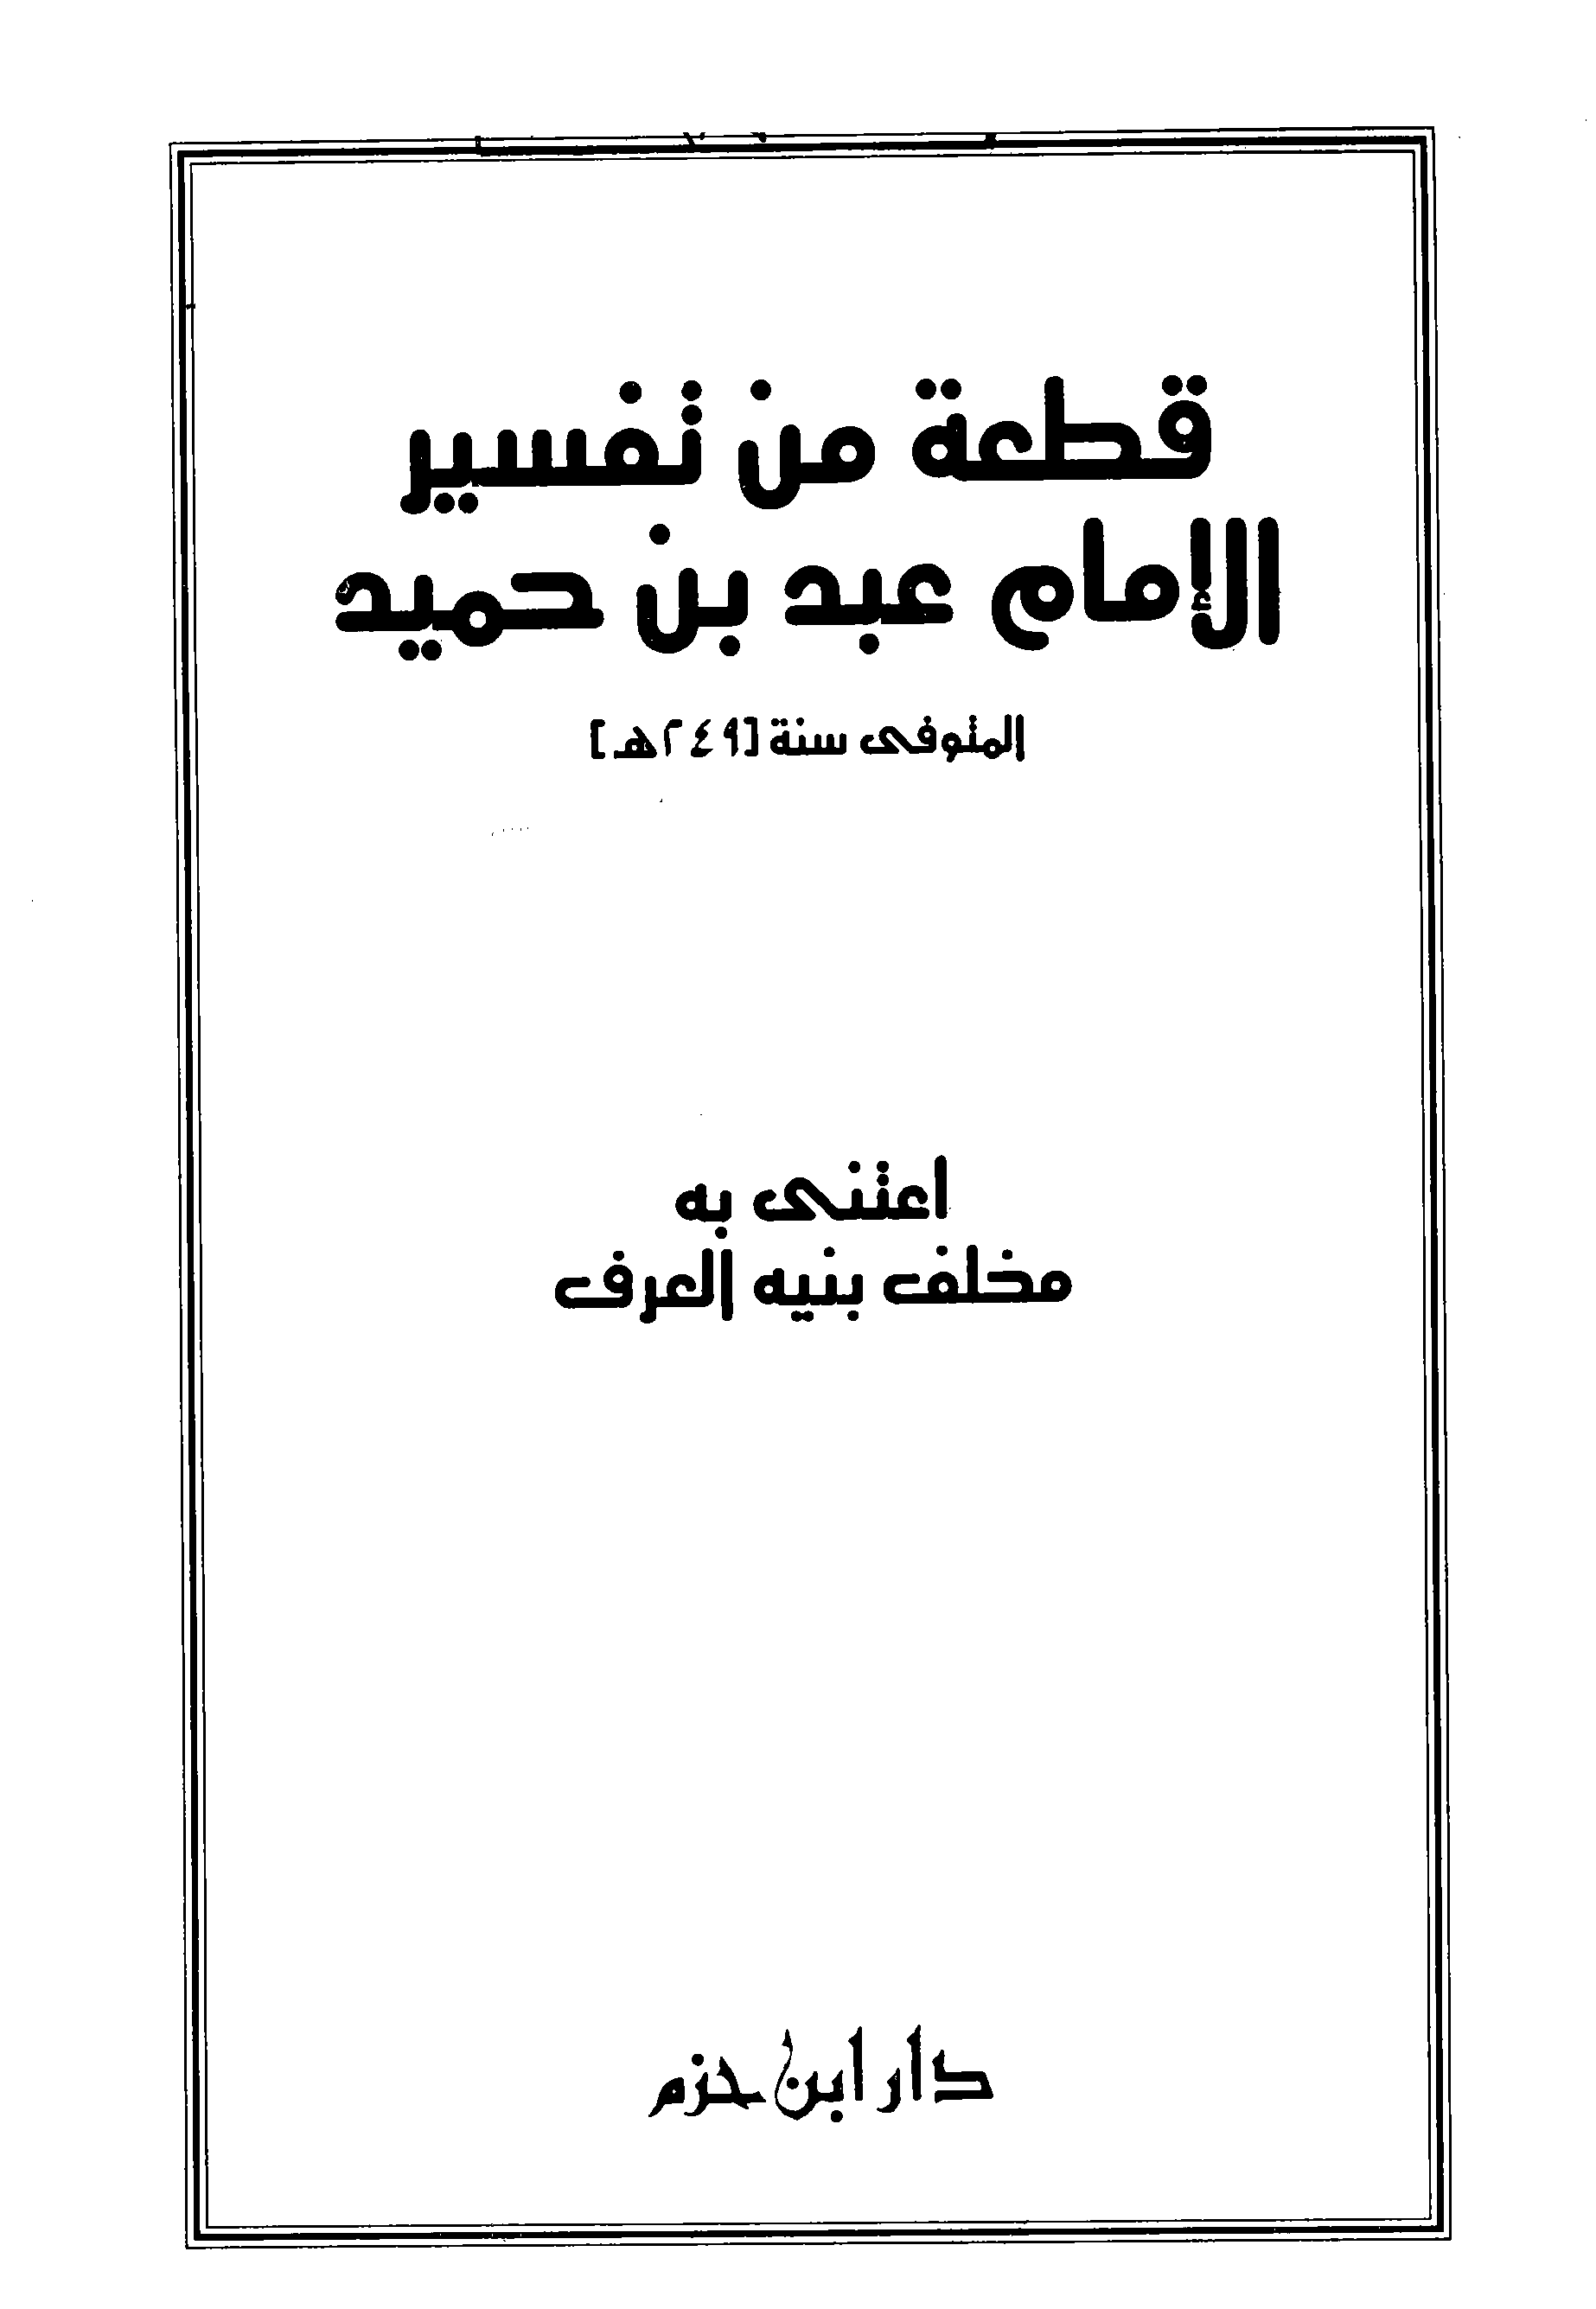 تحميل كتاب قطعة من تفسير الإمام عبد بن حميد لـِ: الإمام أبو محمد عبد بن حميد بن نصر الكسي، ويقال: الكشي (ت 249)